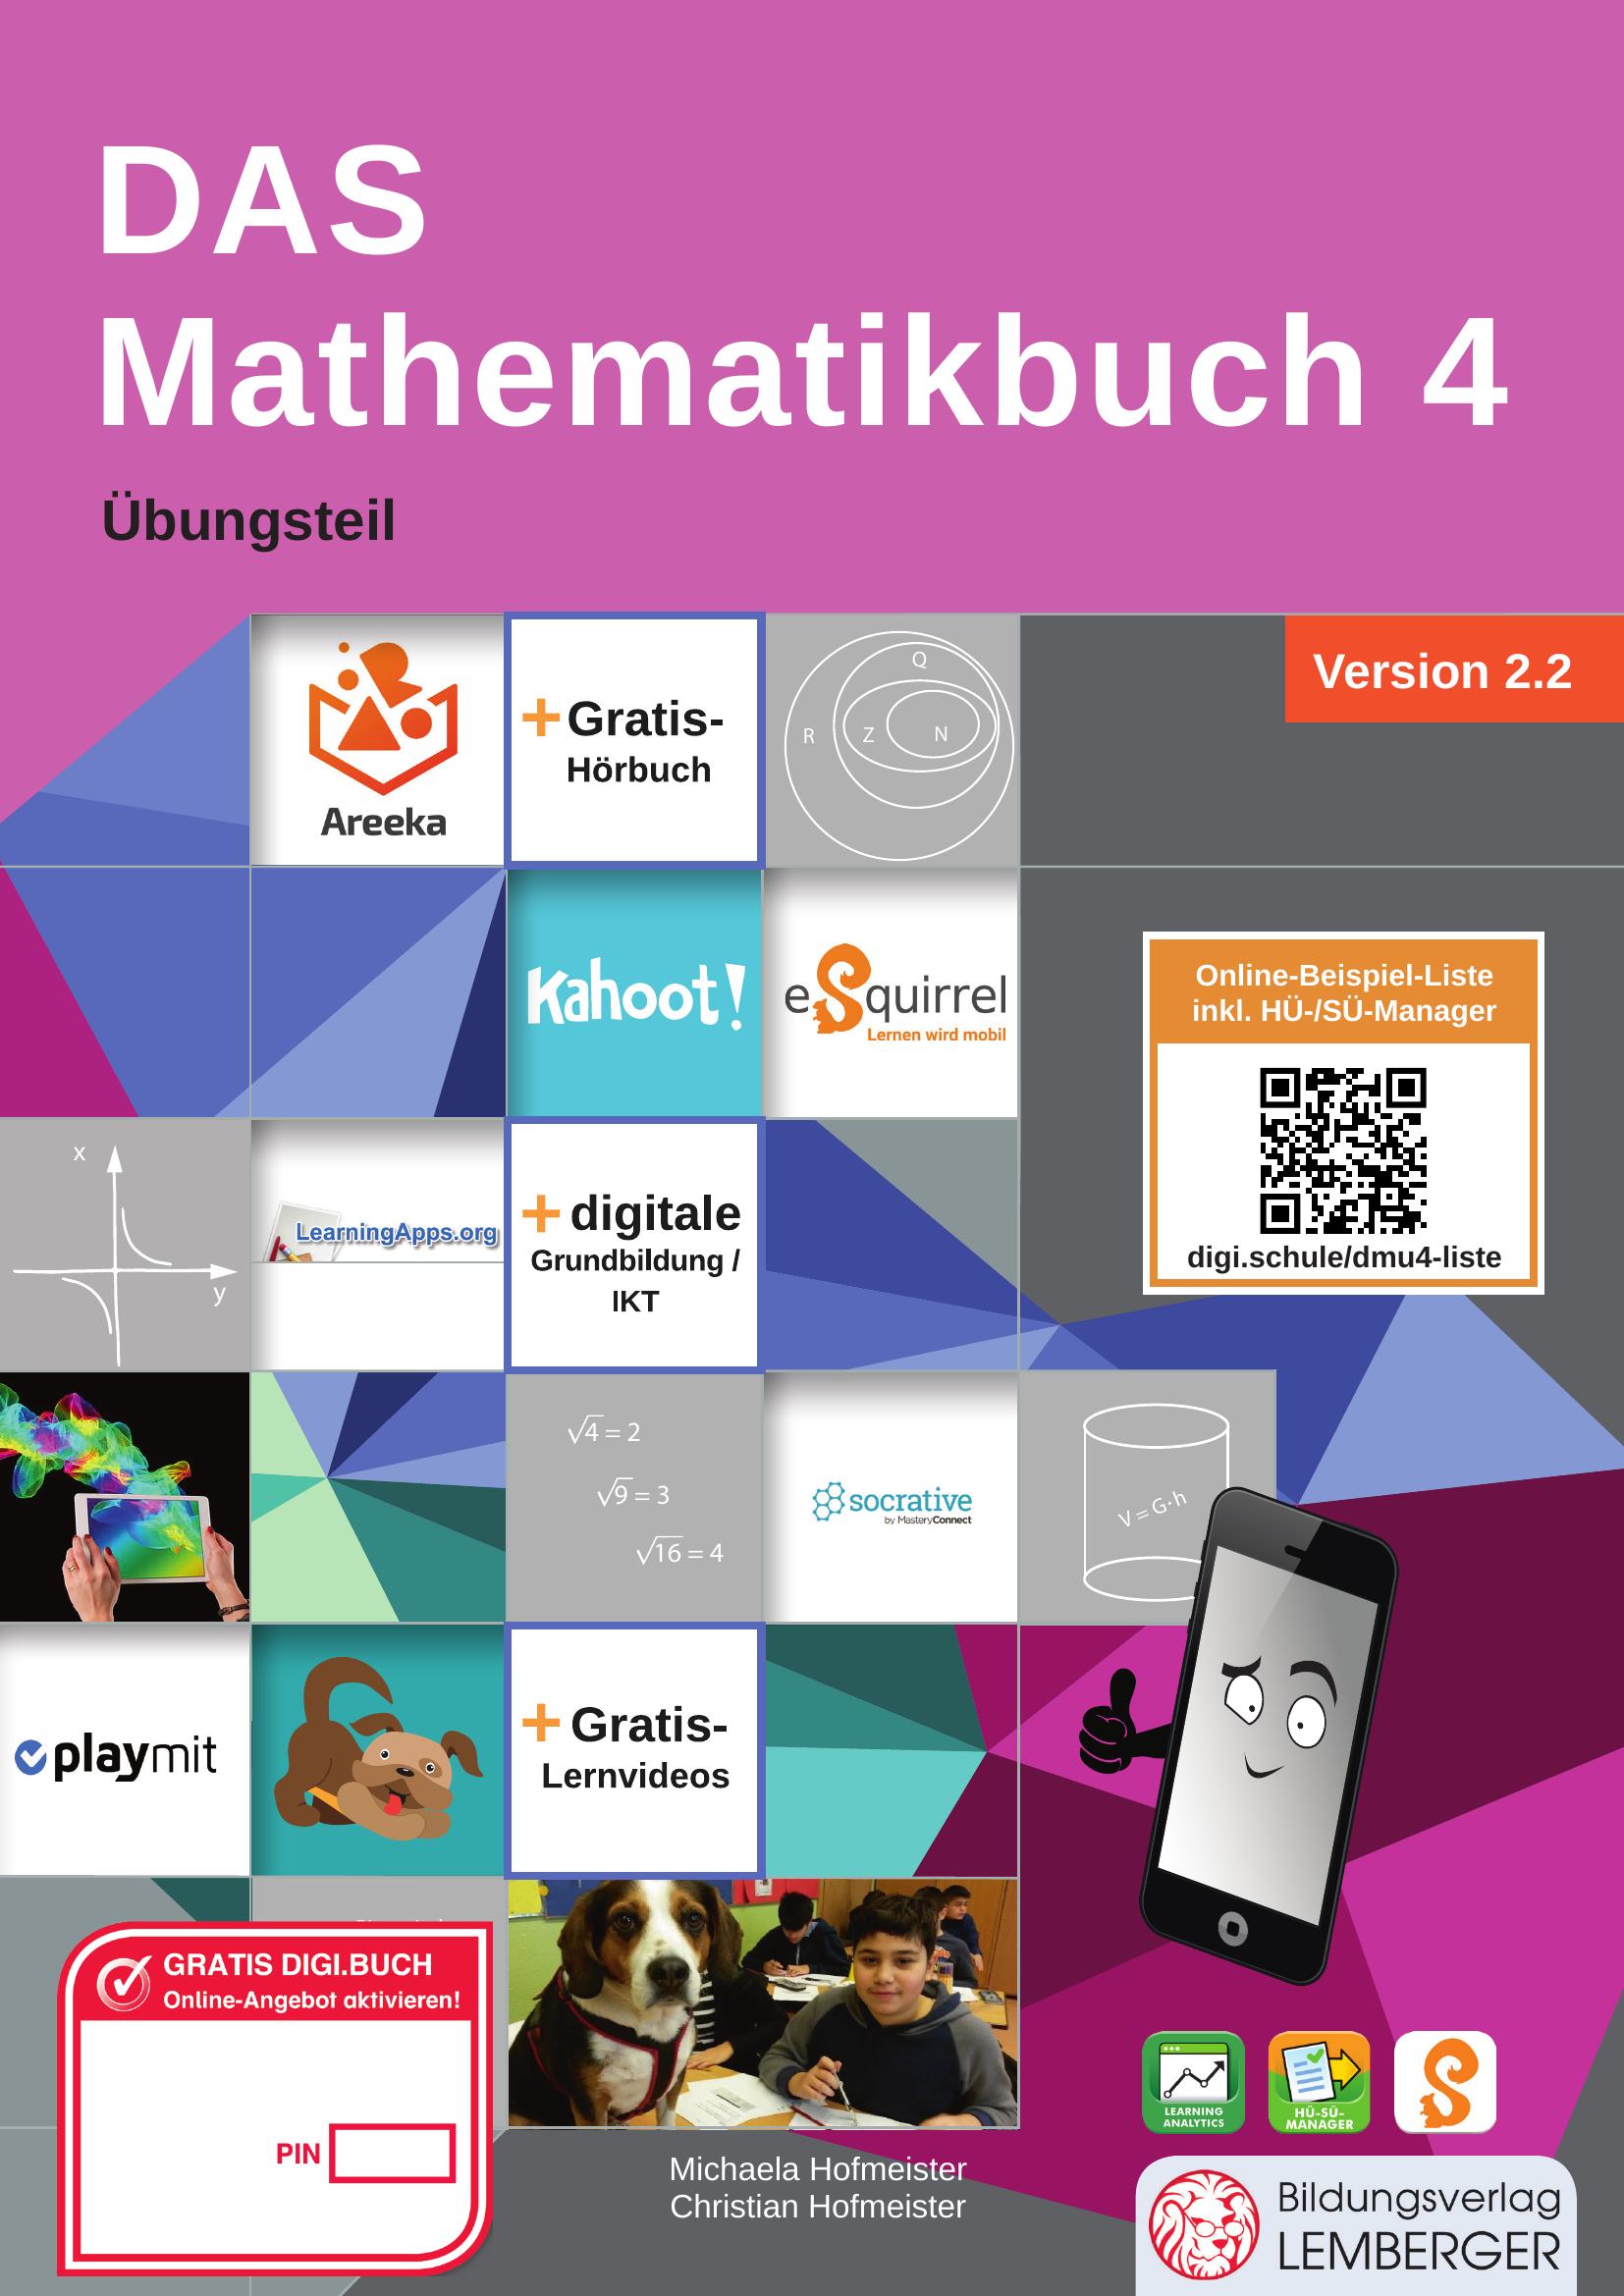 DAS Mathematikbuch 4 IKT – Übungsteil v2.2